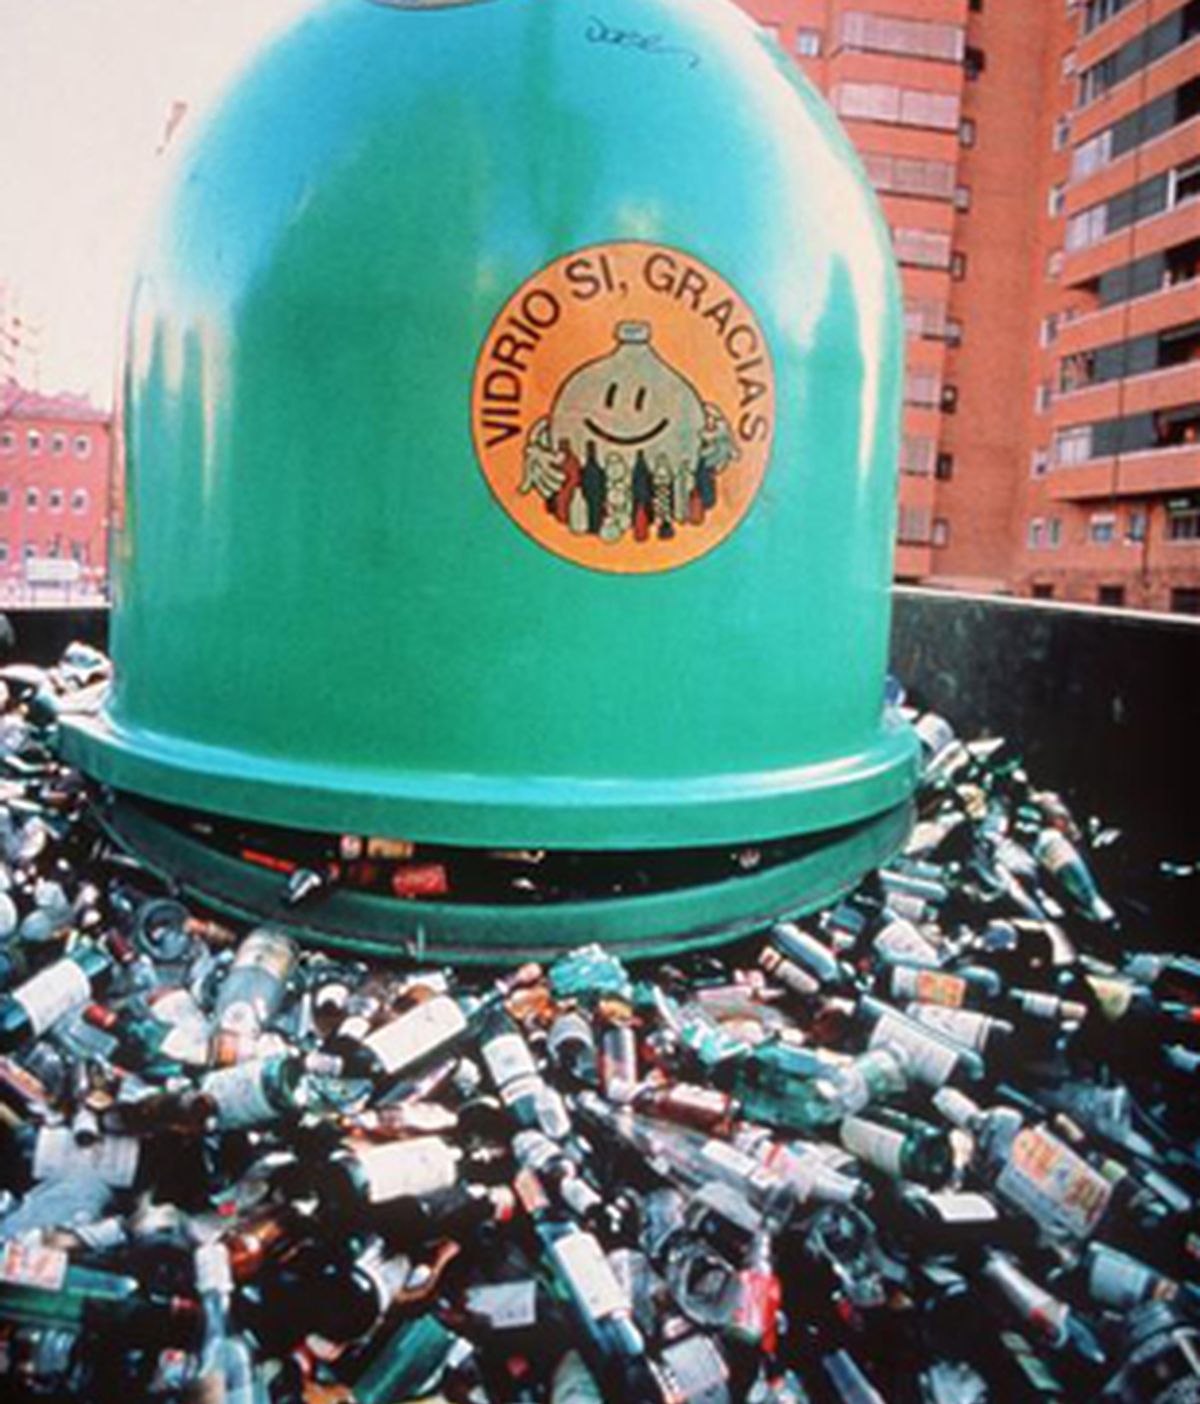 Madrid produce toneladas de basuras. Foto: Archivo.